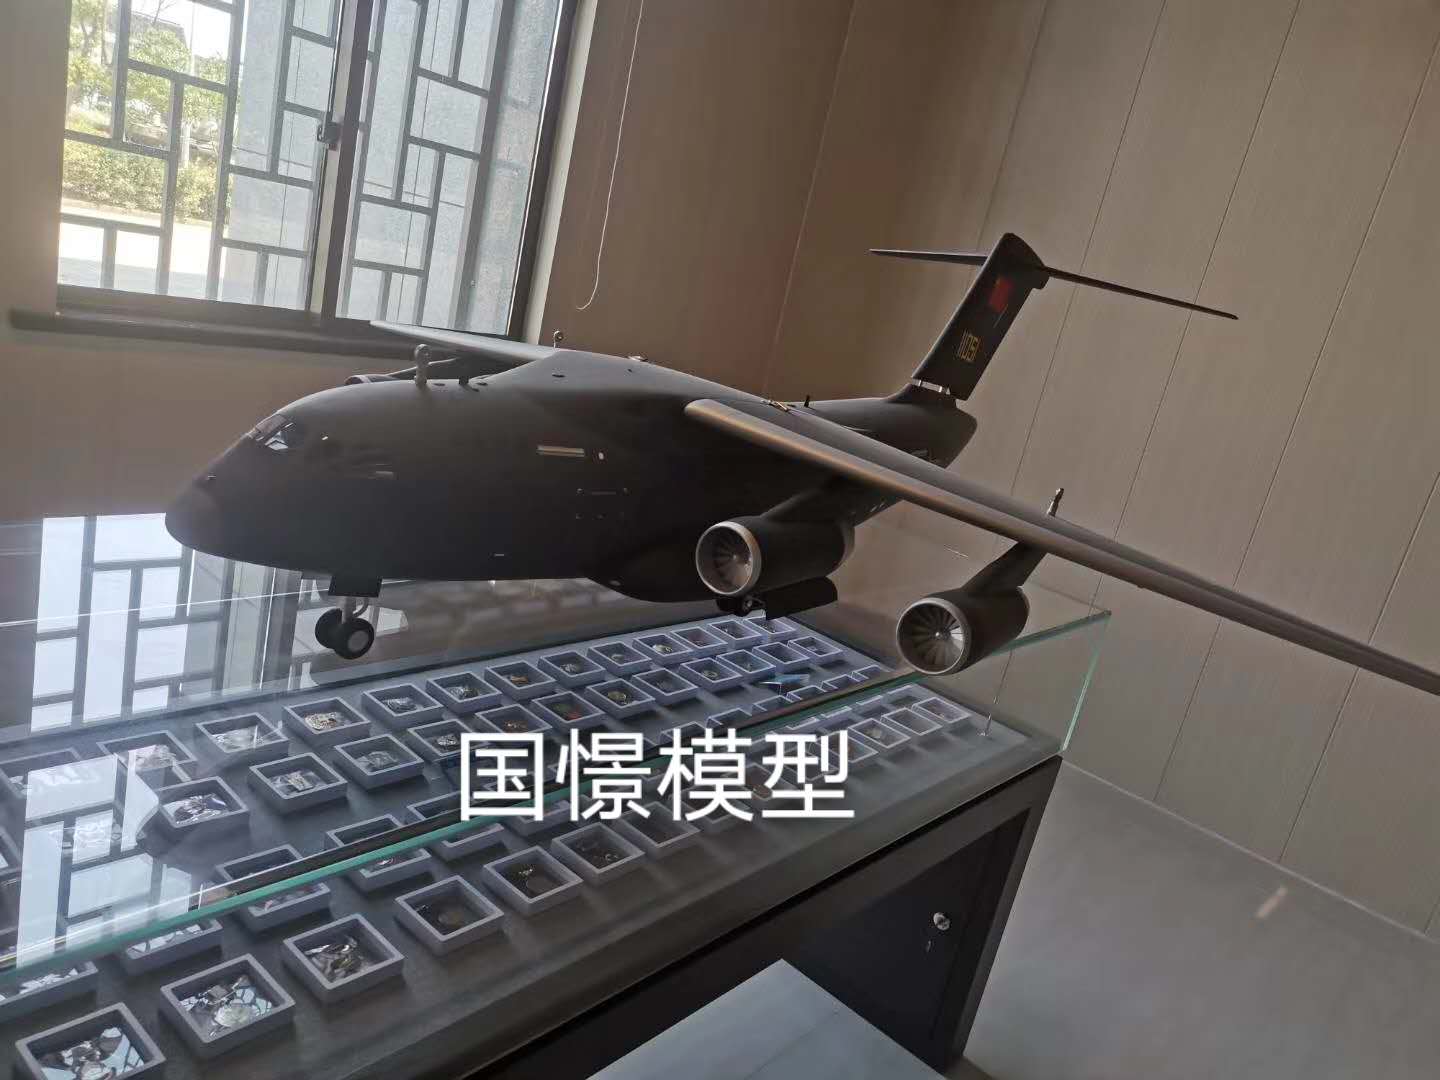 涿州市飞机模型